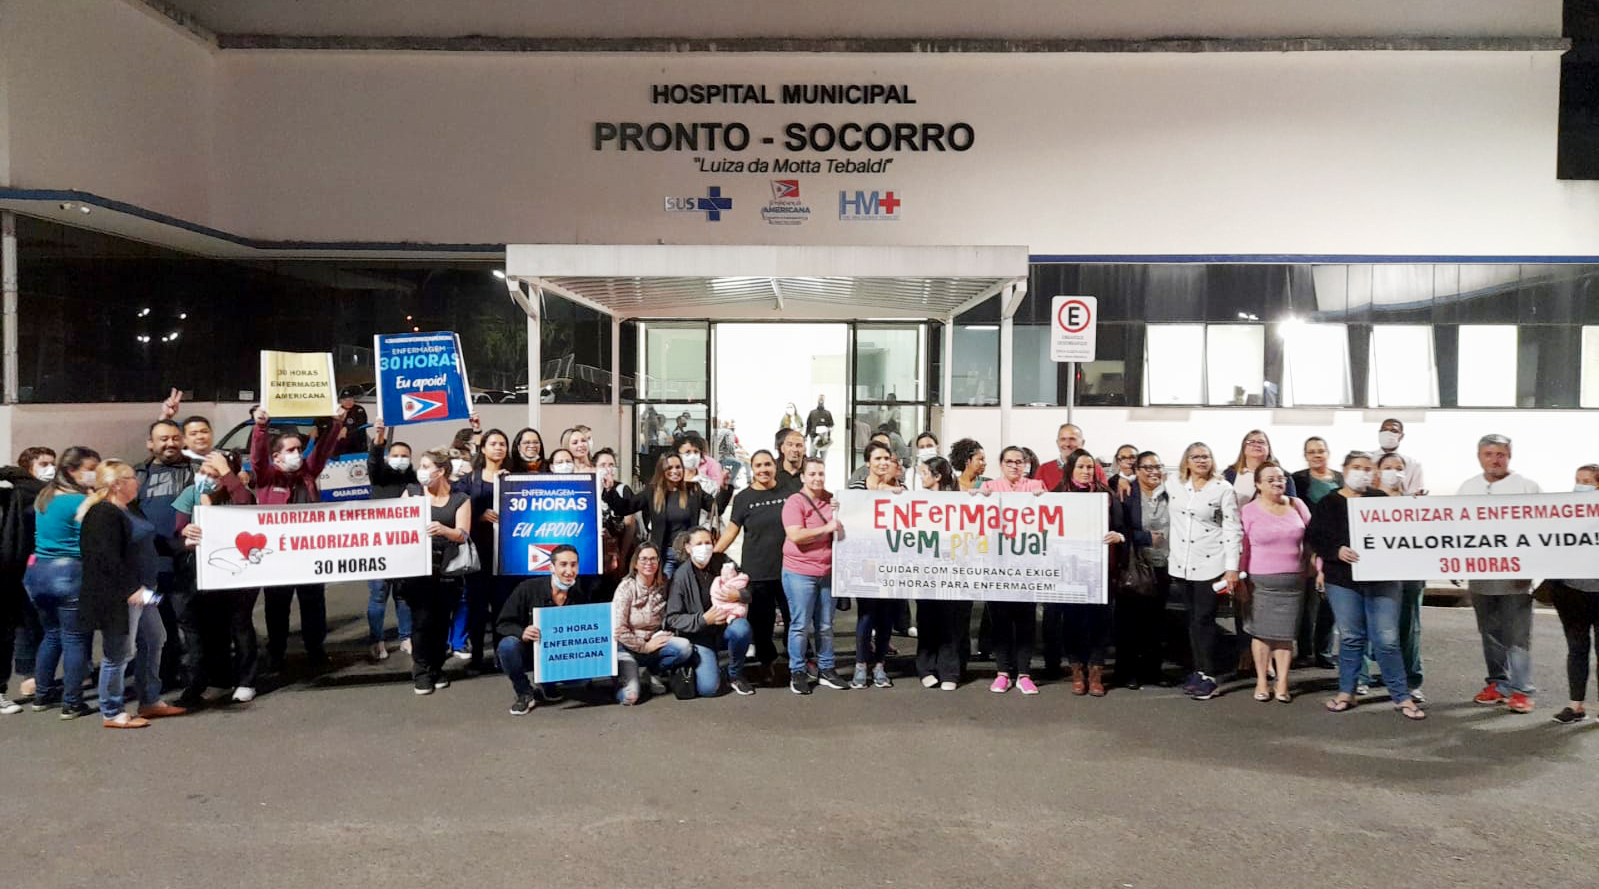 Jornada de 30 horas | Enfermagem delibera por manifestação na Câmara nesta quinta (30), às 14 horas